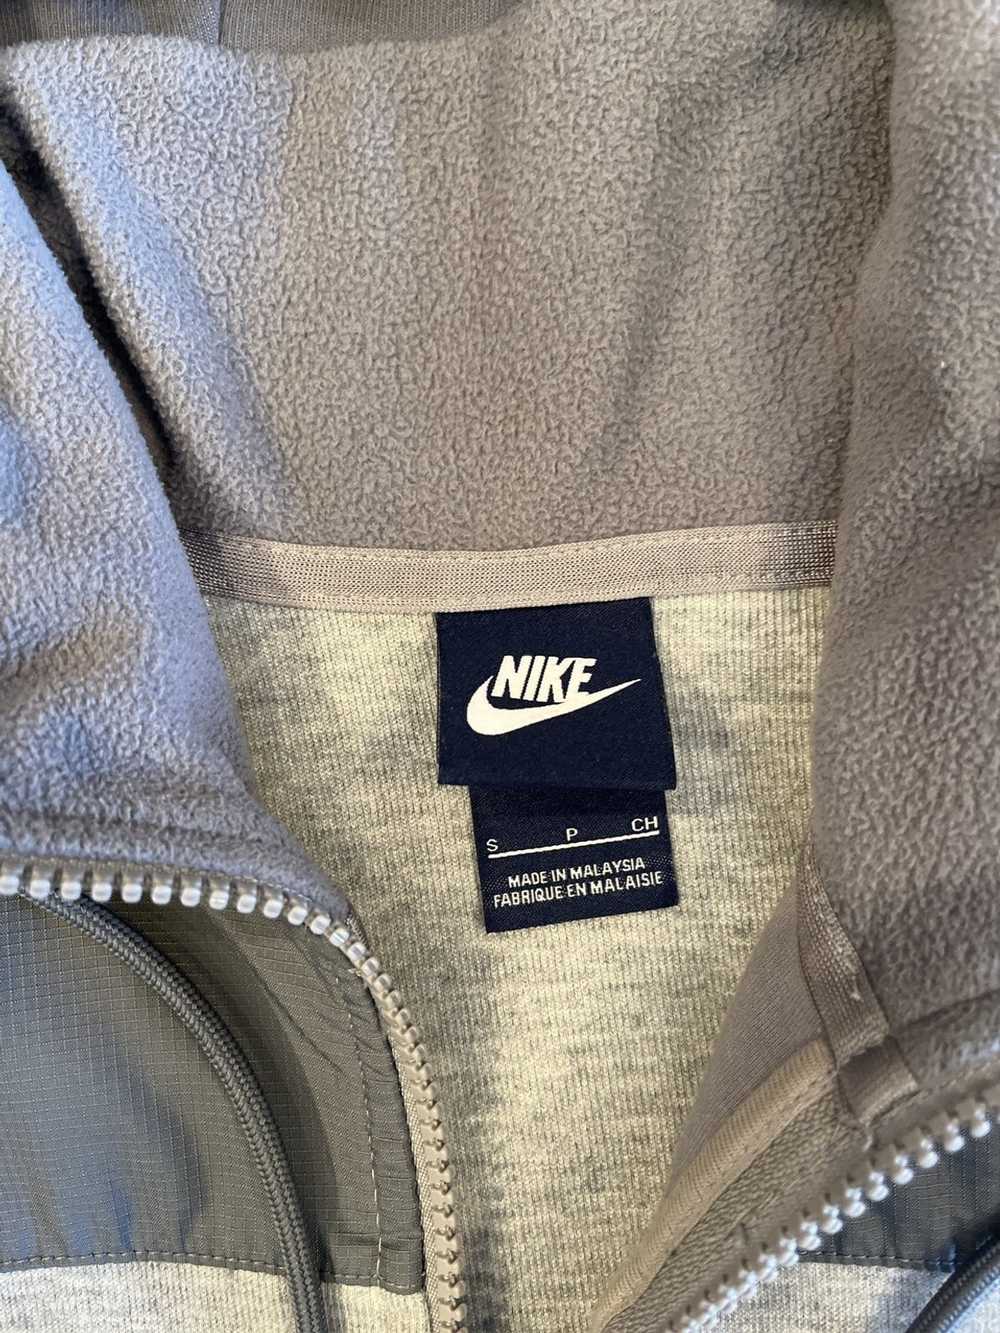 Nike Nike Jacket - image 3